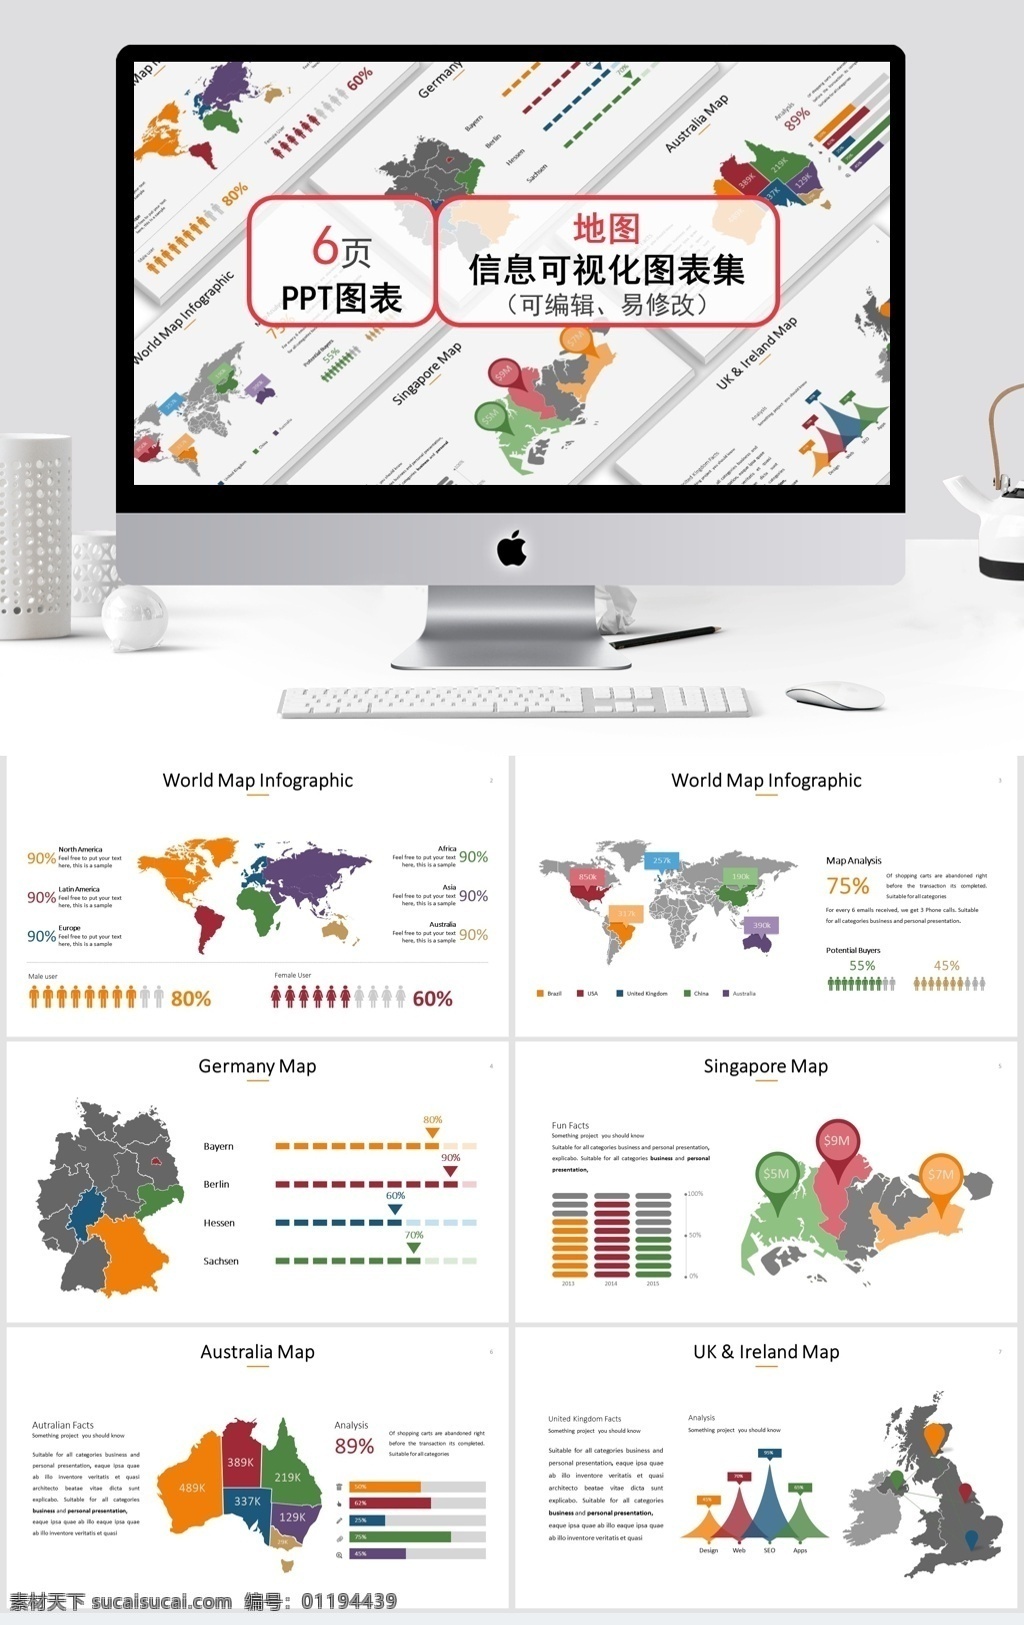 地图 信息 可视化 图表 集 模板 ppt模板 商务 创意 ppt图表 世界地图 分析图 彩色